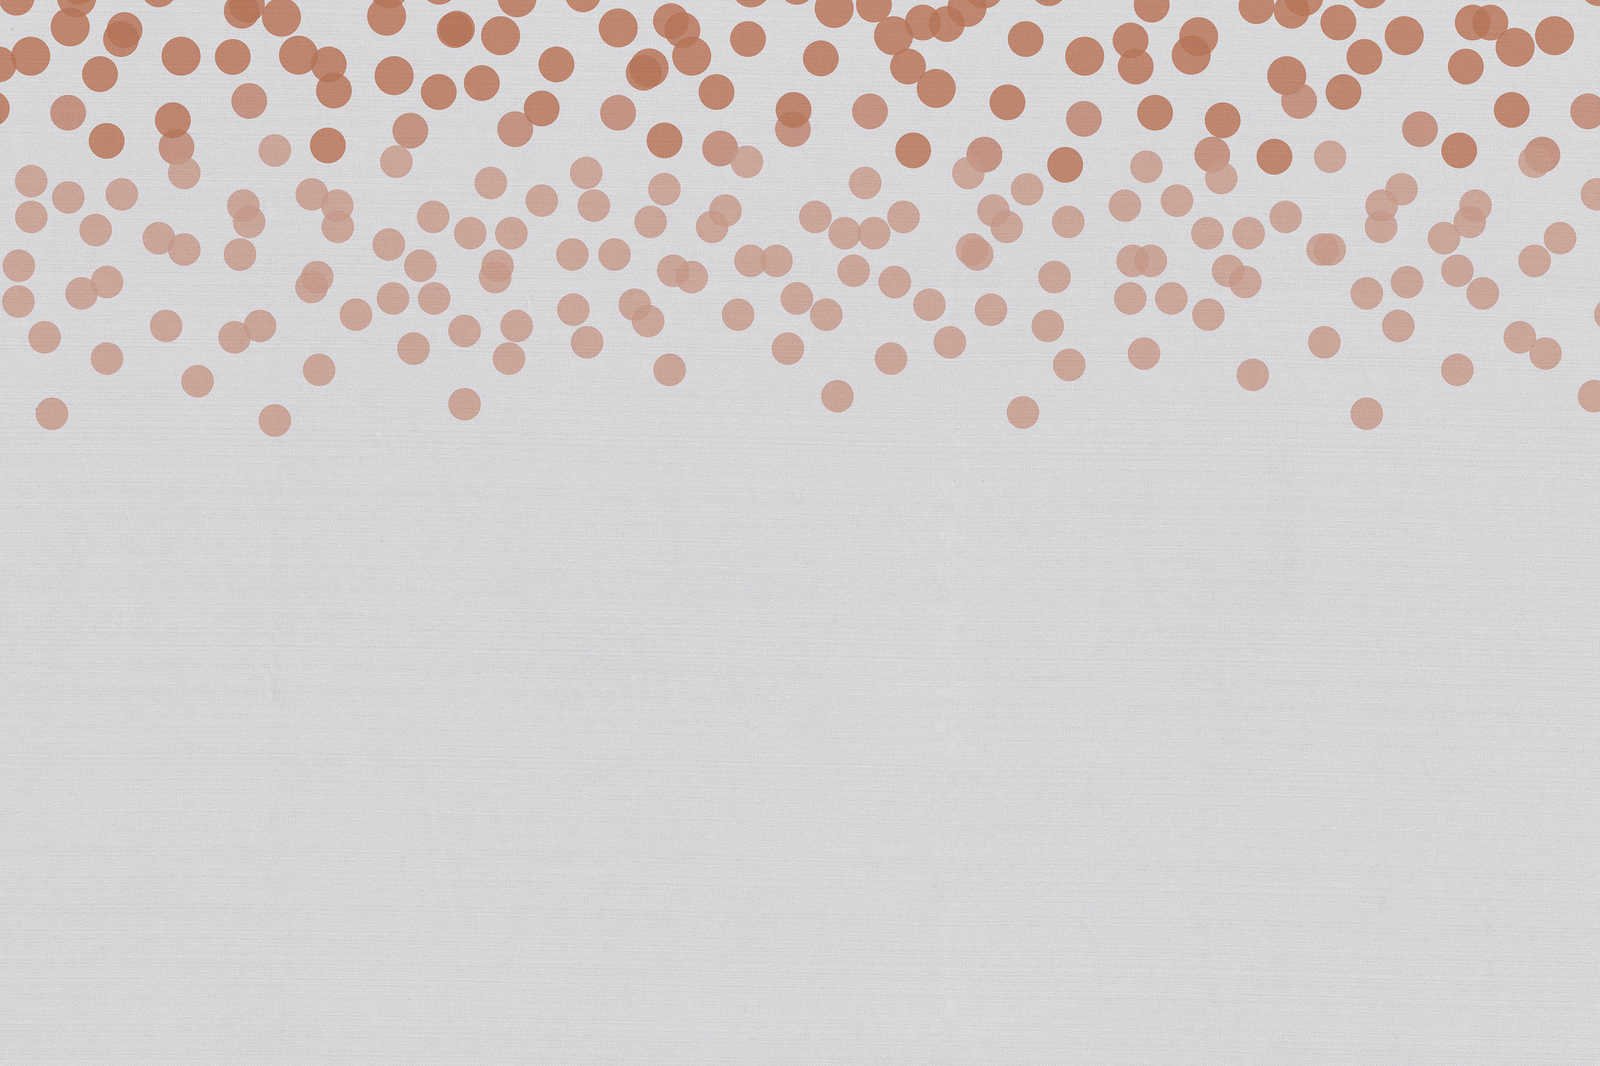             Cuadro en lienzo con discreto motivo de puntos | rojo, gris - 0,90 m x 0,60 m
        